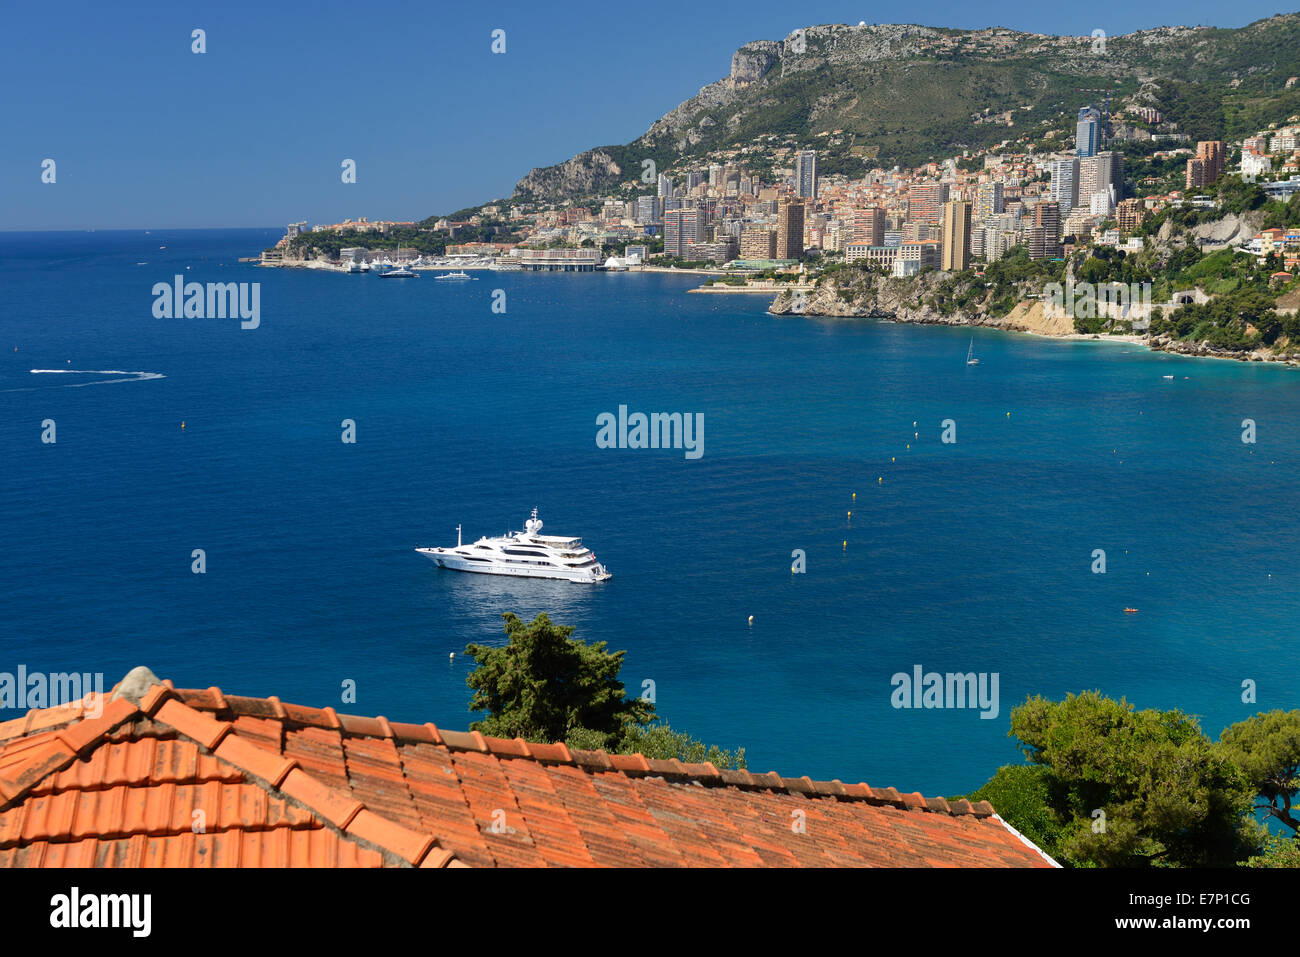 Europa, Francia, Mónaco, Montecarlo, el francés, el Riviera, el Mediterráneo, la costa, la ciudad, el barco, Foto de stock